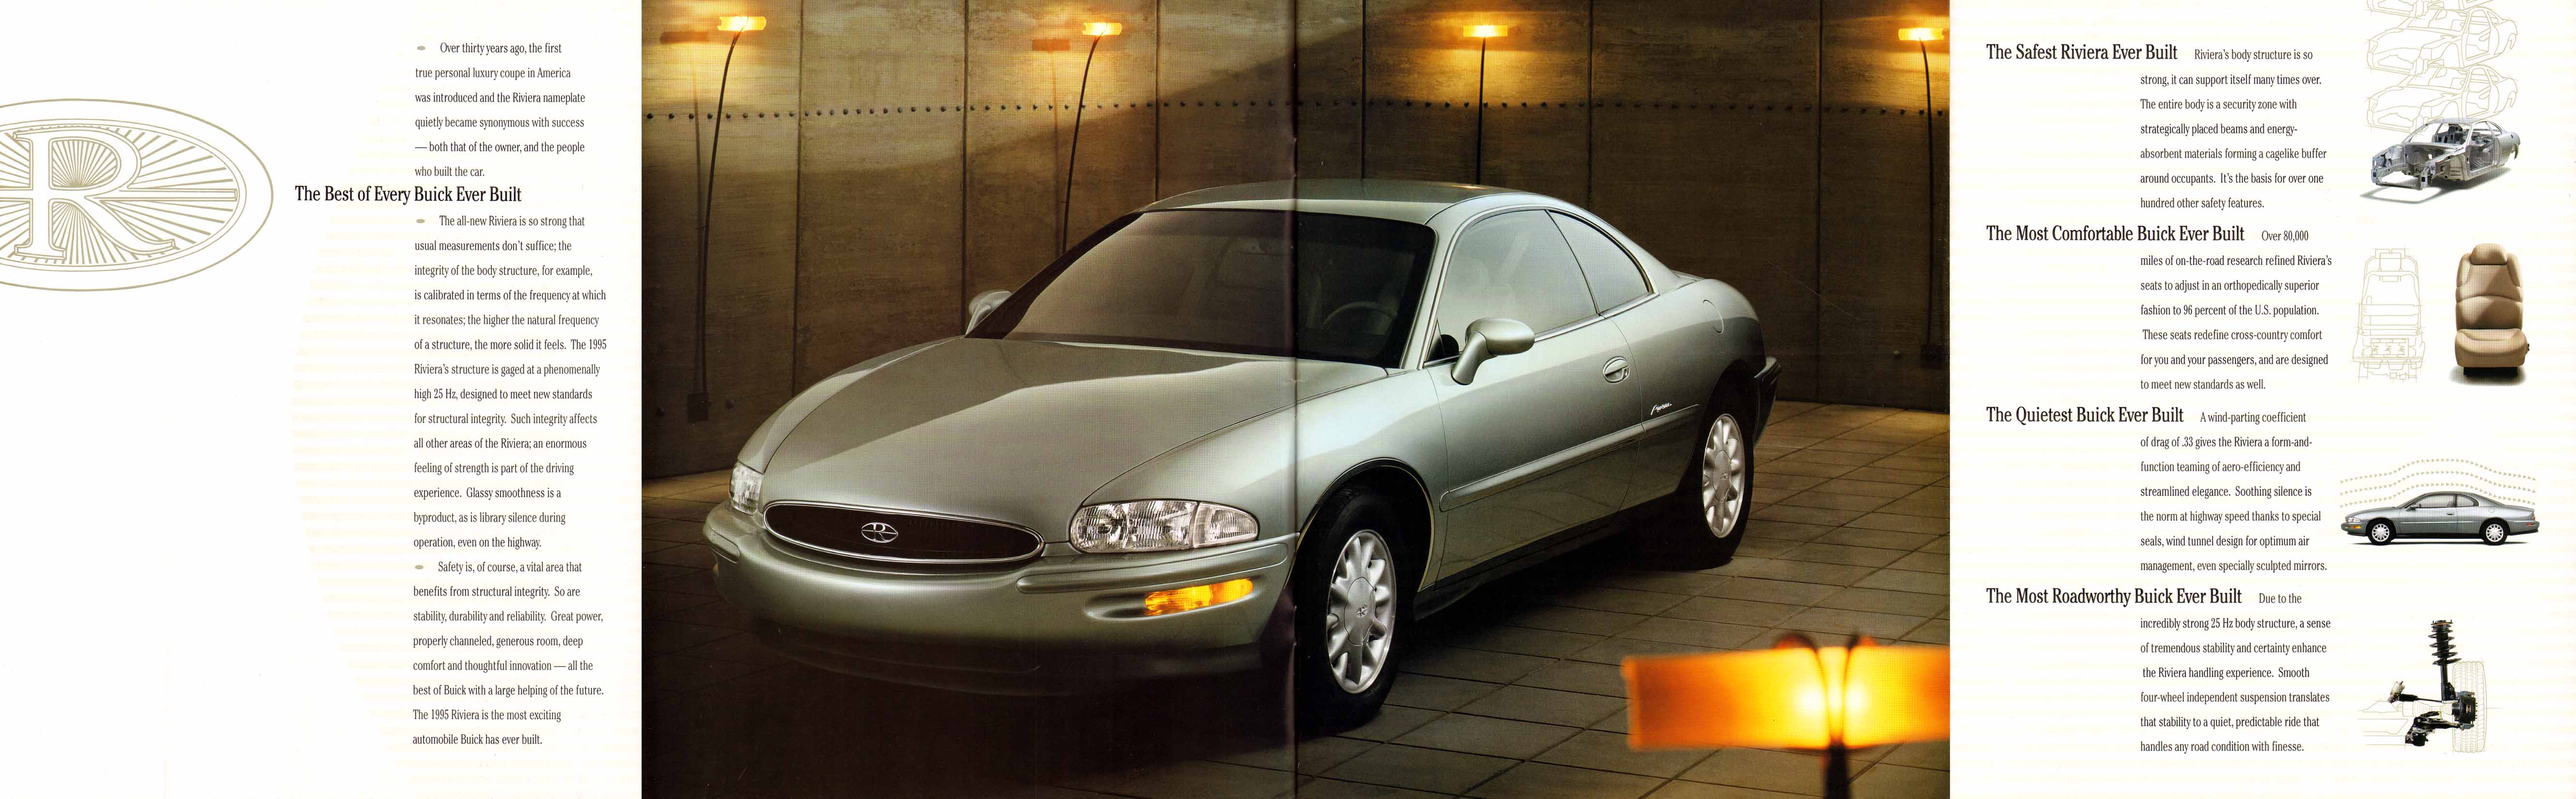 1995 Buick Riviera Prestige-03-04-05-06